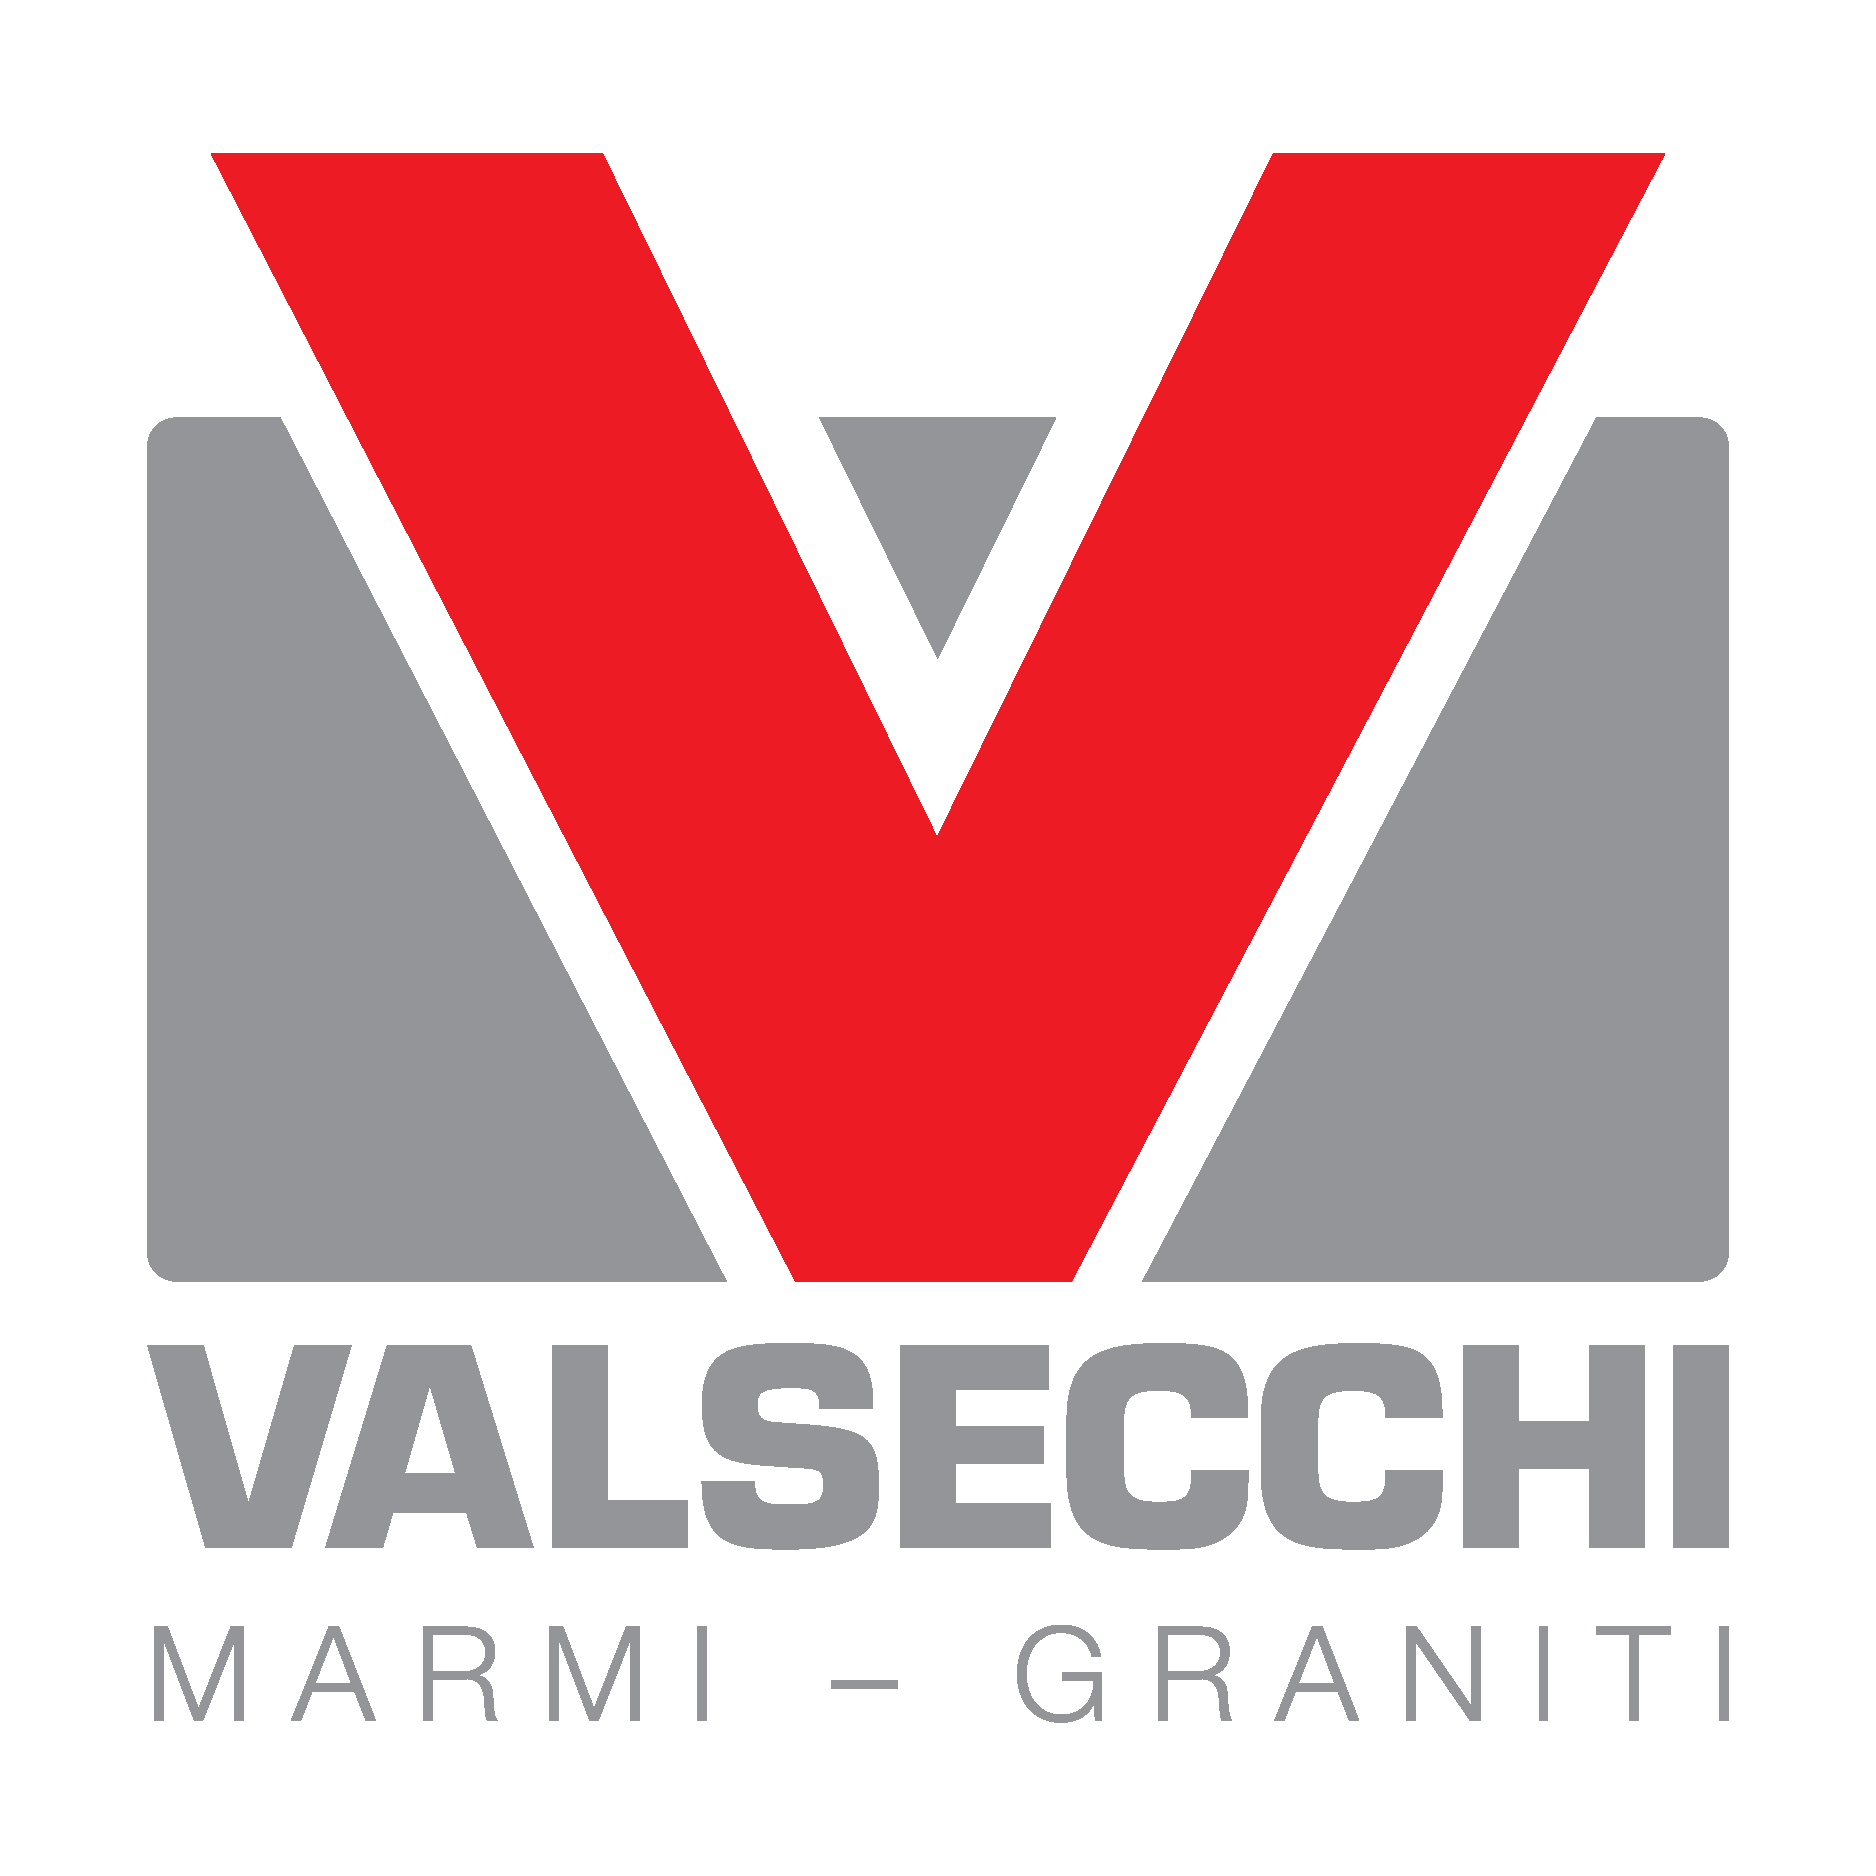 Valsecchi Marmi e Graniti Logo